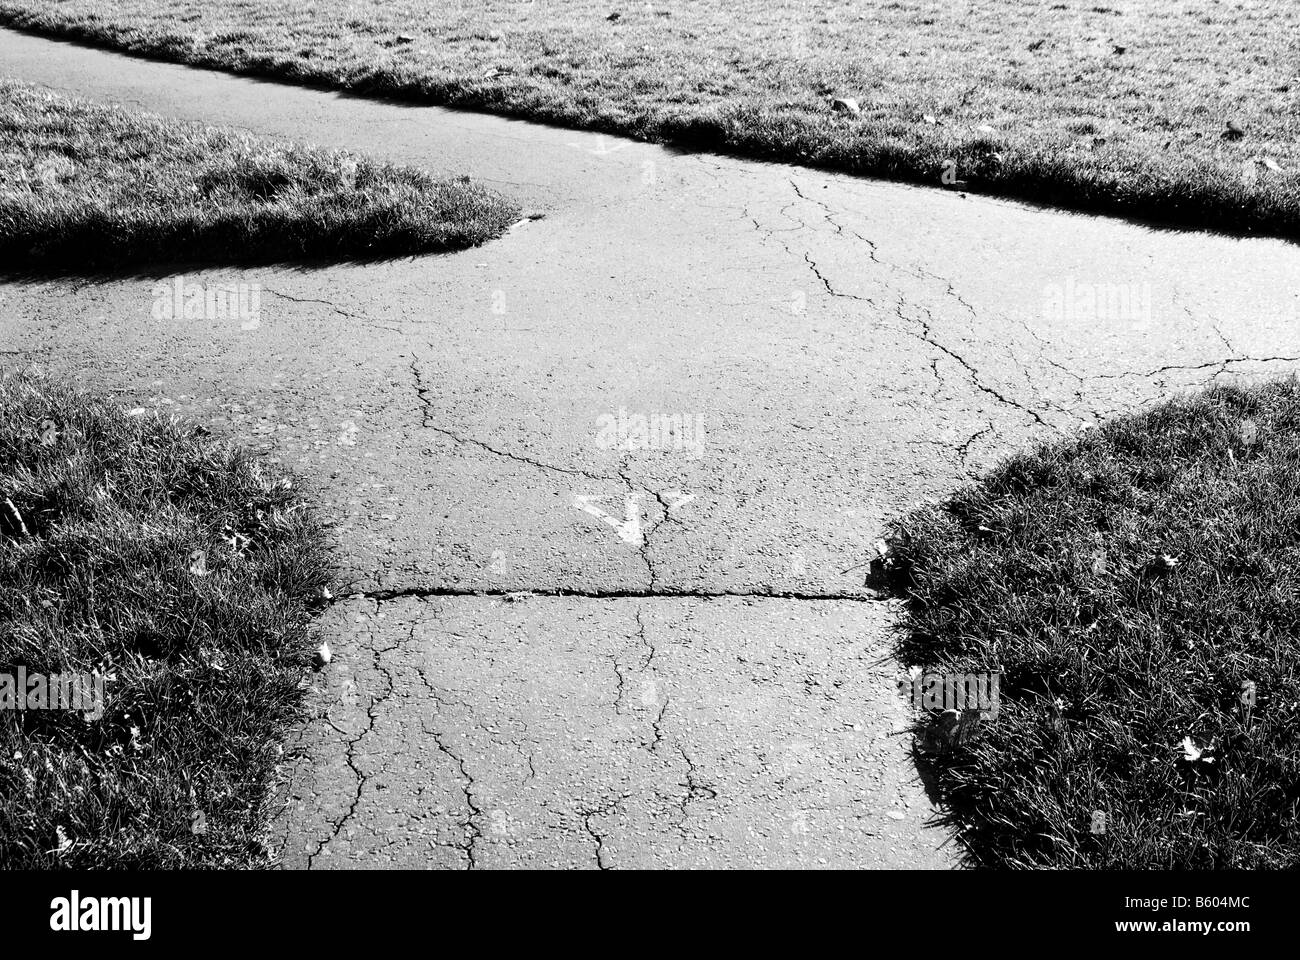 Una immagine in bianco e nero di un percorso che va in direzioni diverse con erba e crepe nel percorso Foto Stock